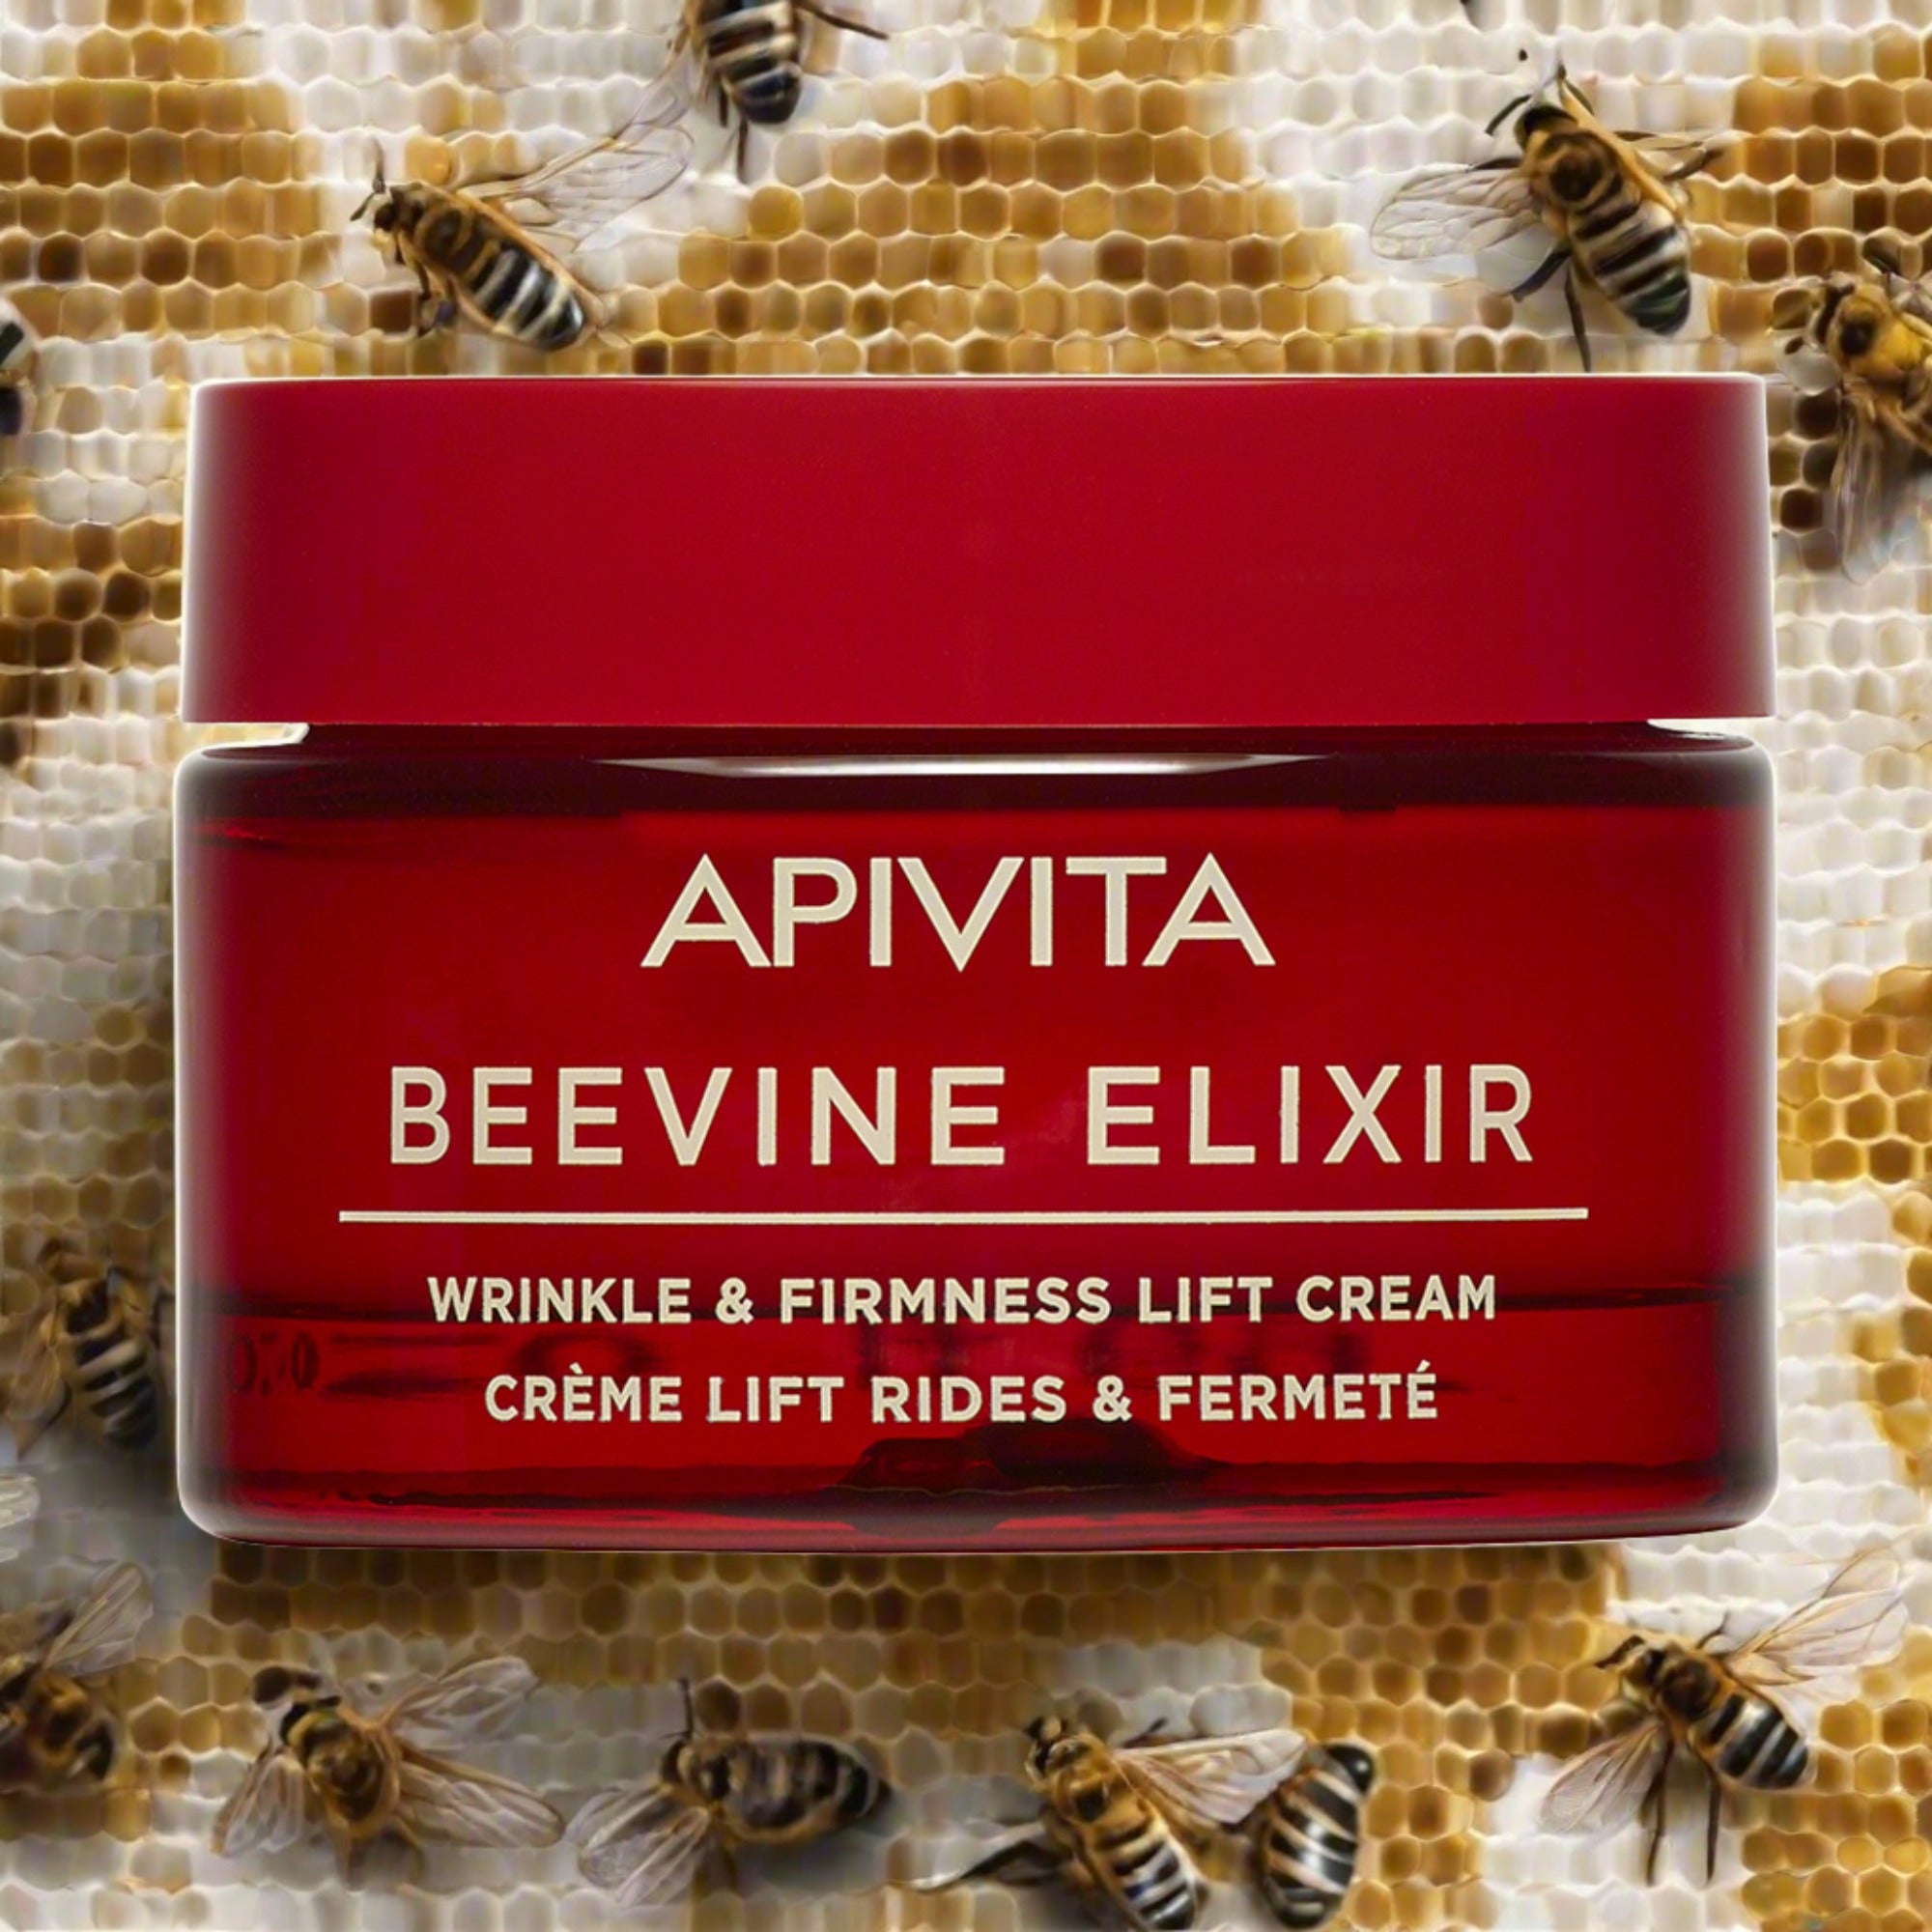 Apivita Beevine Elixir light texture